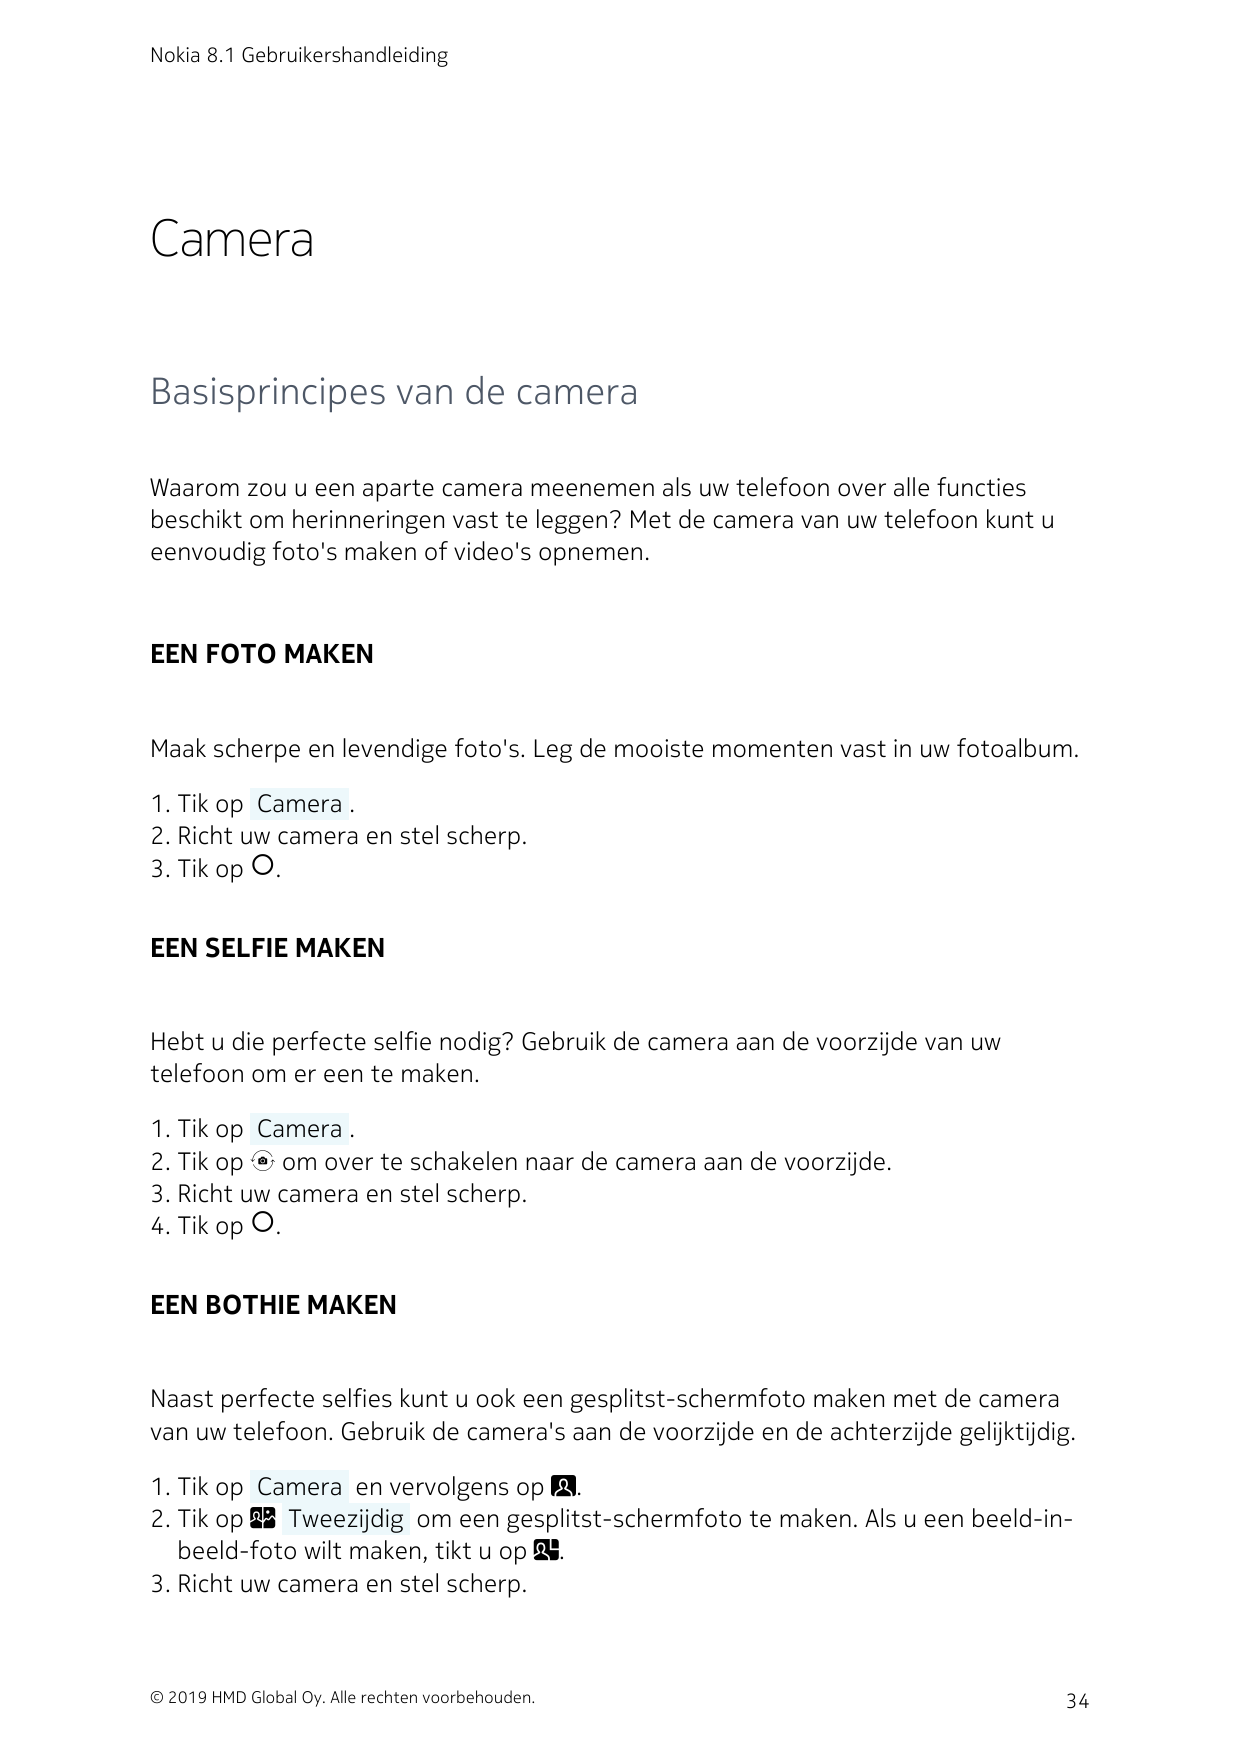 Nokia 8.1 GebruikershandleidingCameraBasisprincipes van de cameraWaarom zou u een aparte camera meenemen als uw telefoon over al